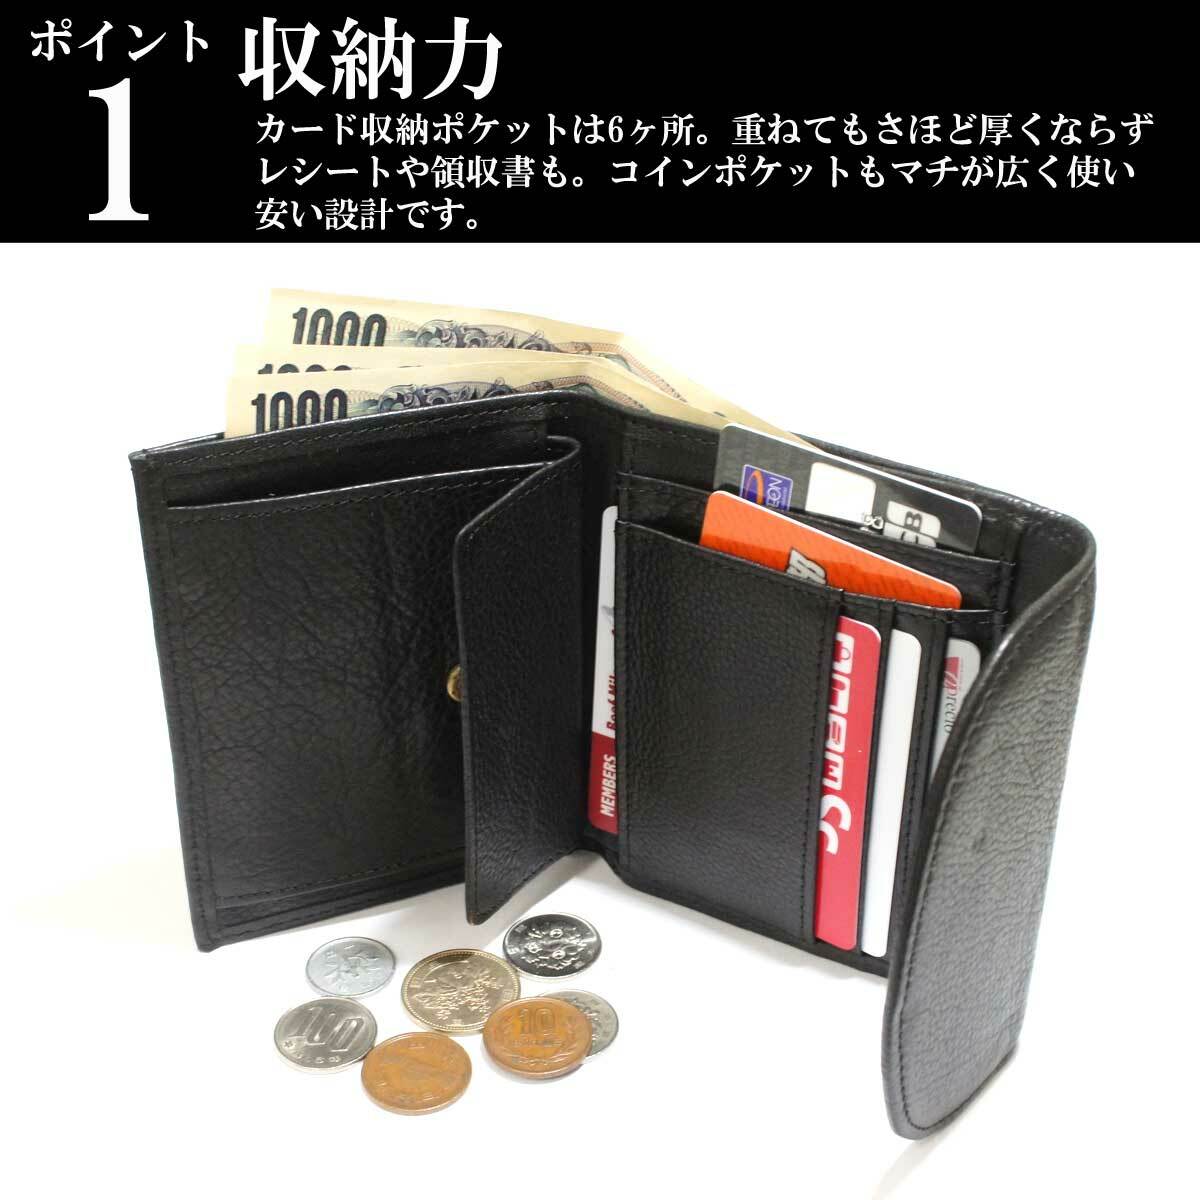 相関する しょっぱい 改修 財布 カード 収納 ブランド - bar-karon.jp